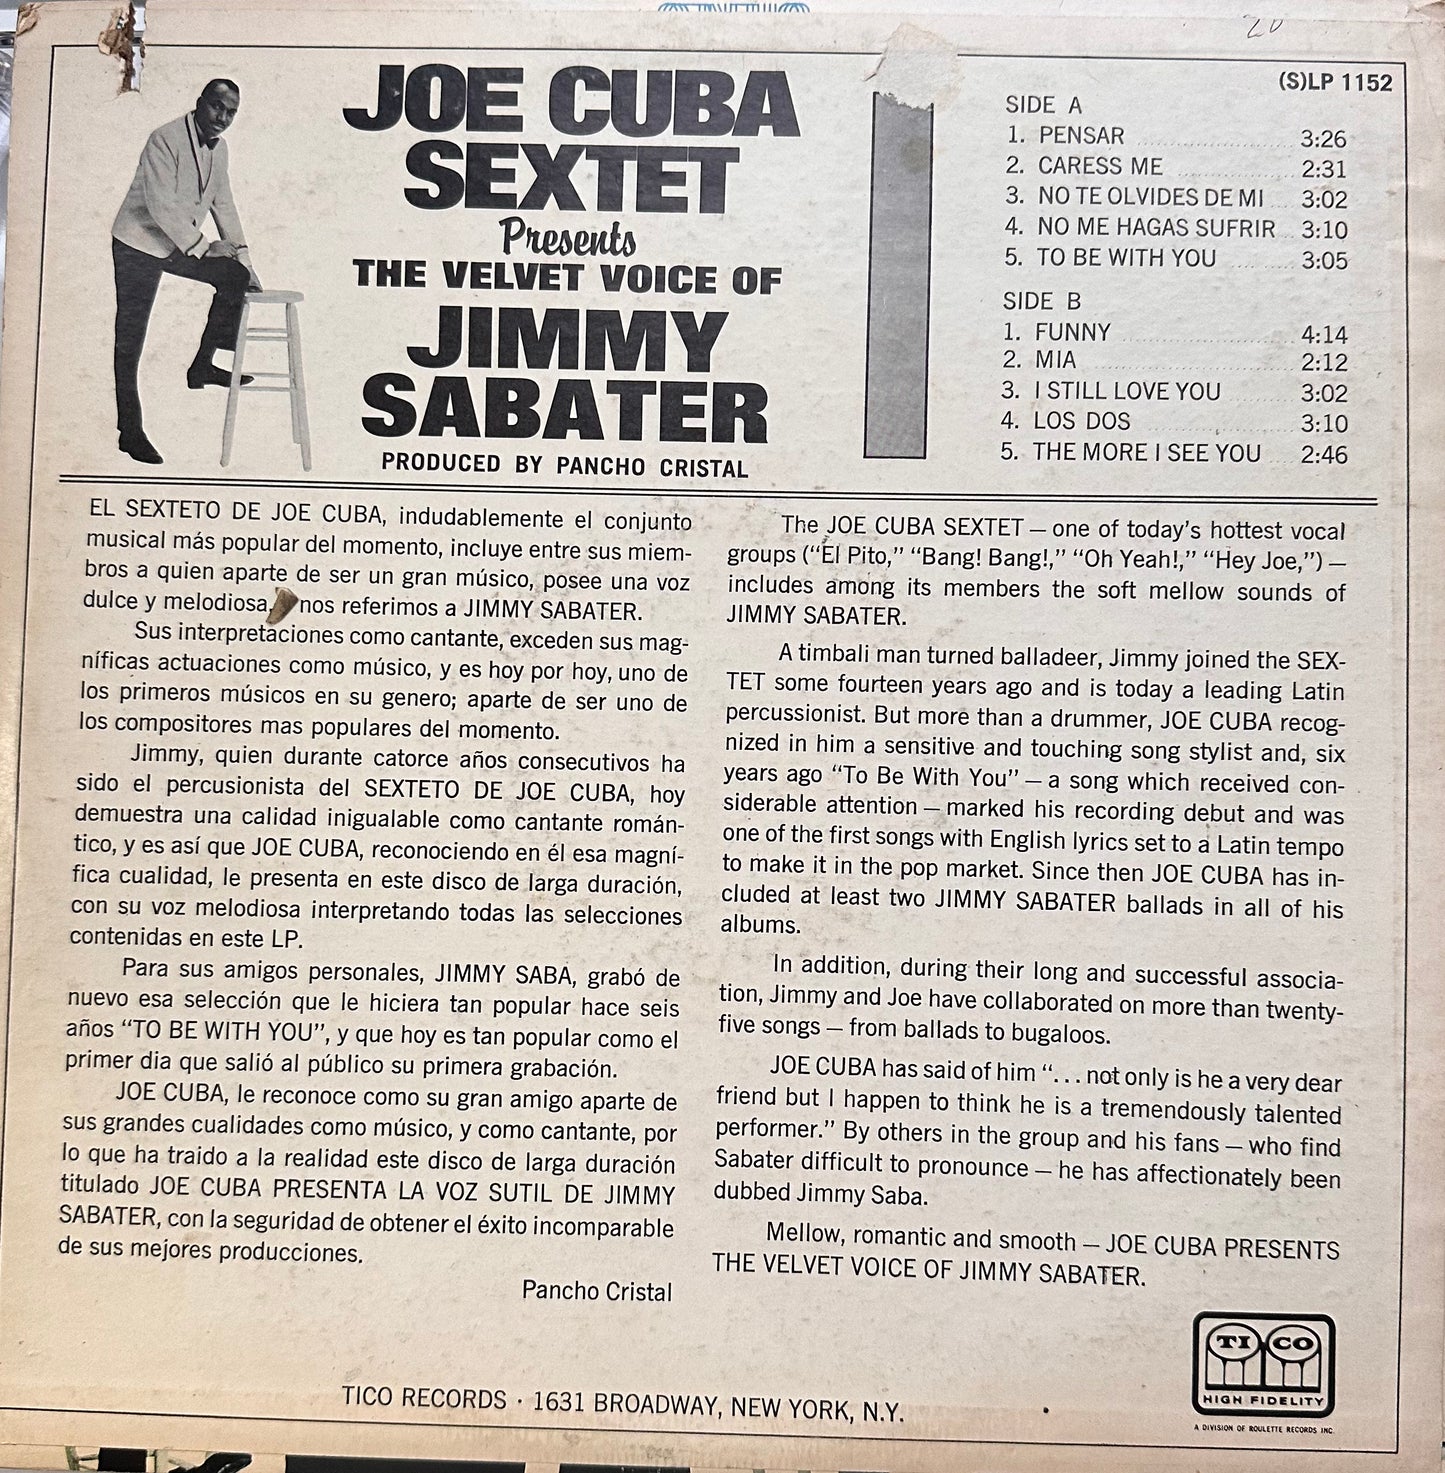 Presents Jimmy Sabater - Joe Cuba Sextet